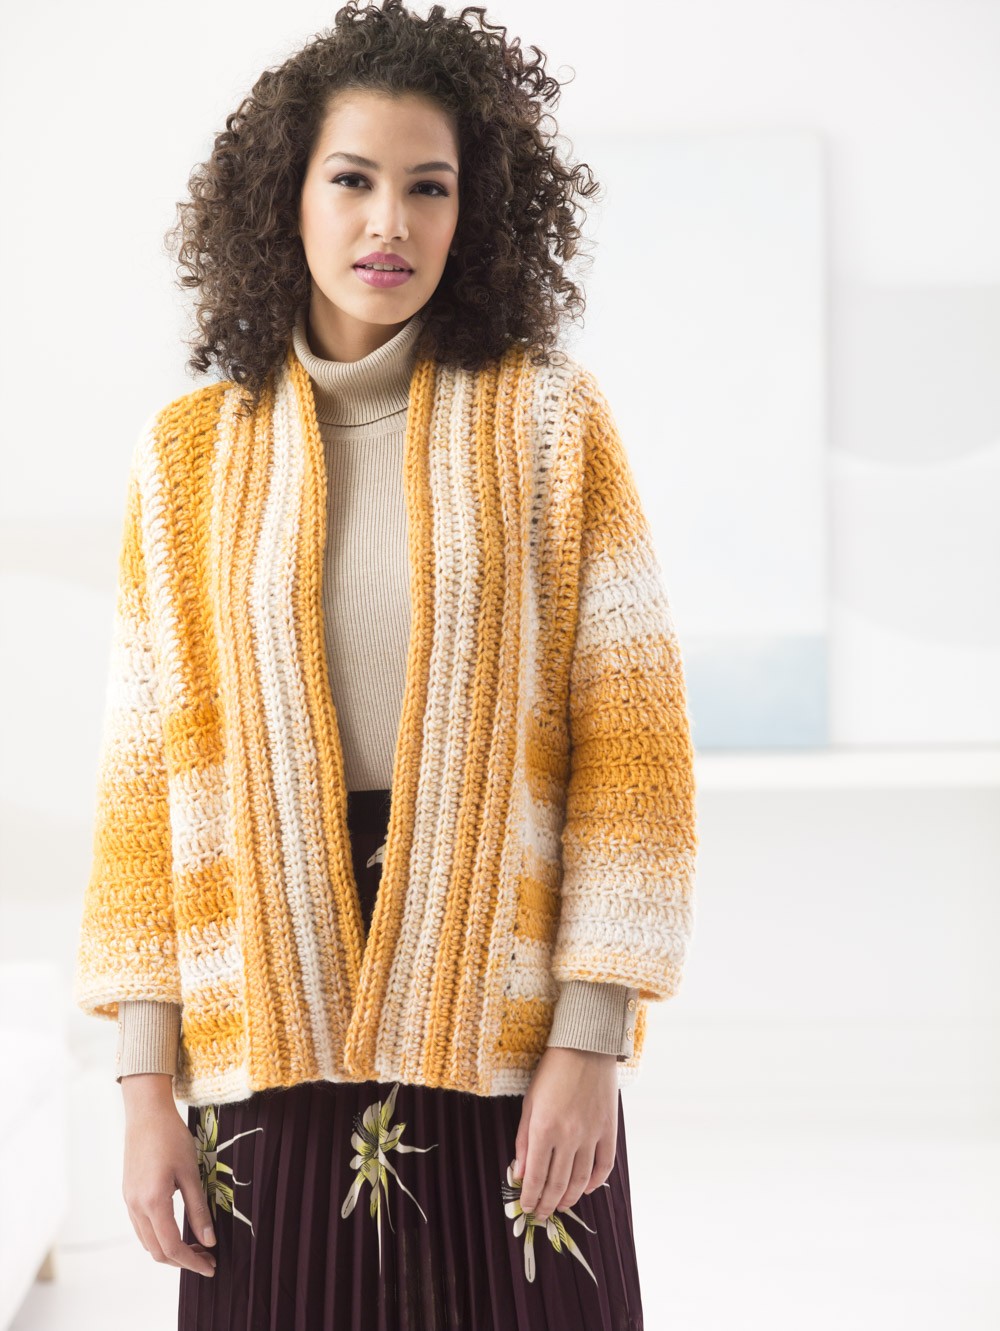 Sideways Cardigan (Crochet)